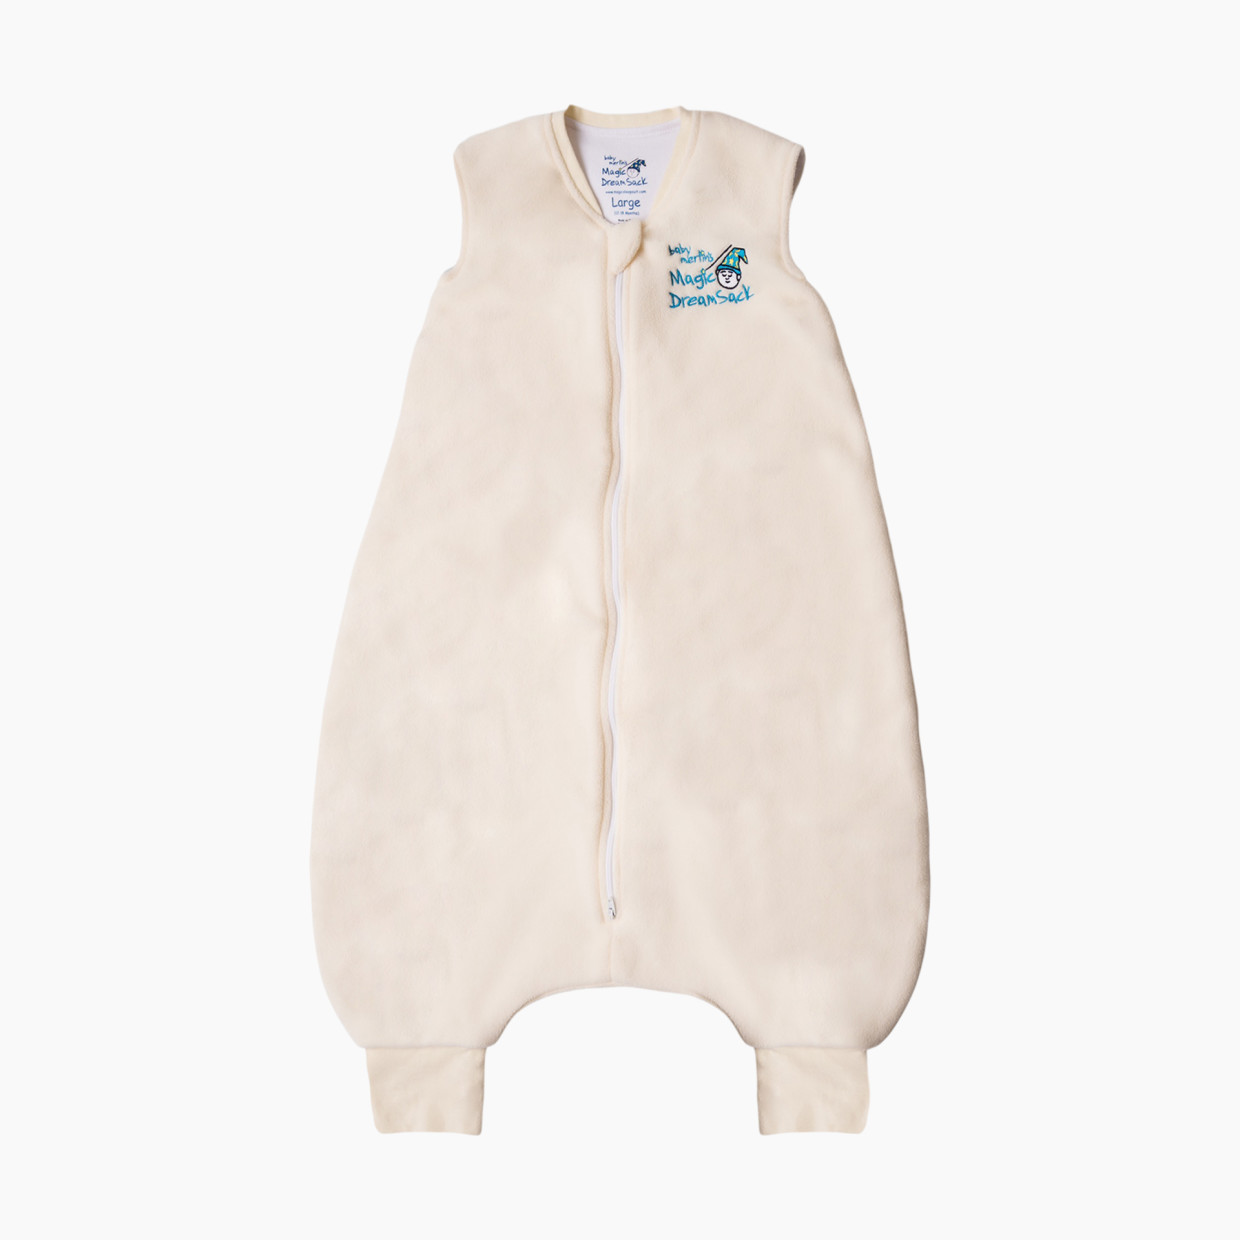 Baby Merlin's Magic Sleepsuit Microfleece Dream Sack Walker - Cream, 12-18 Months.